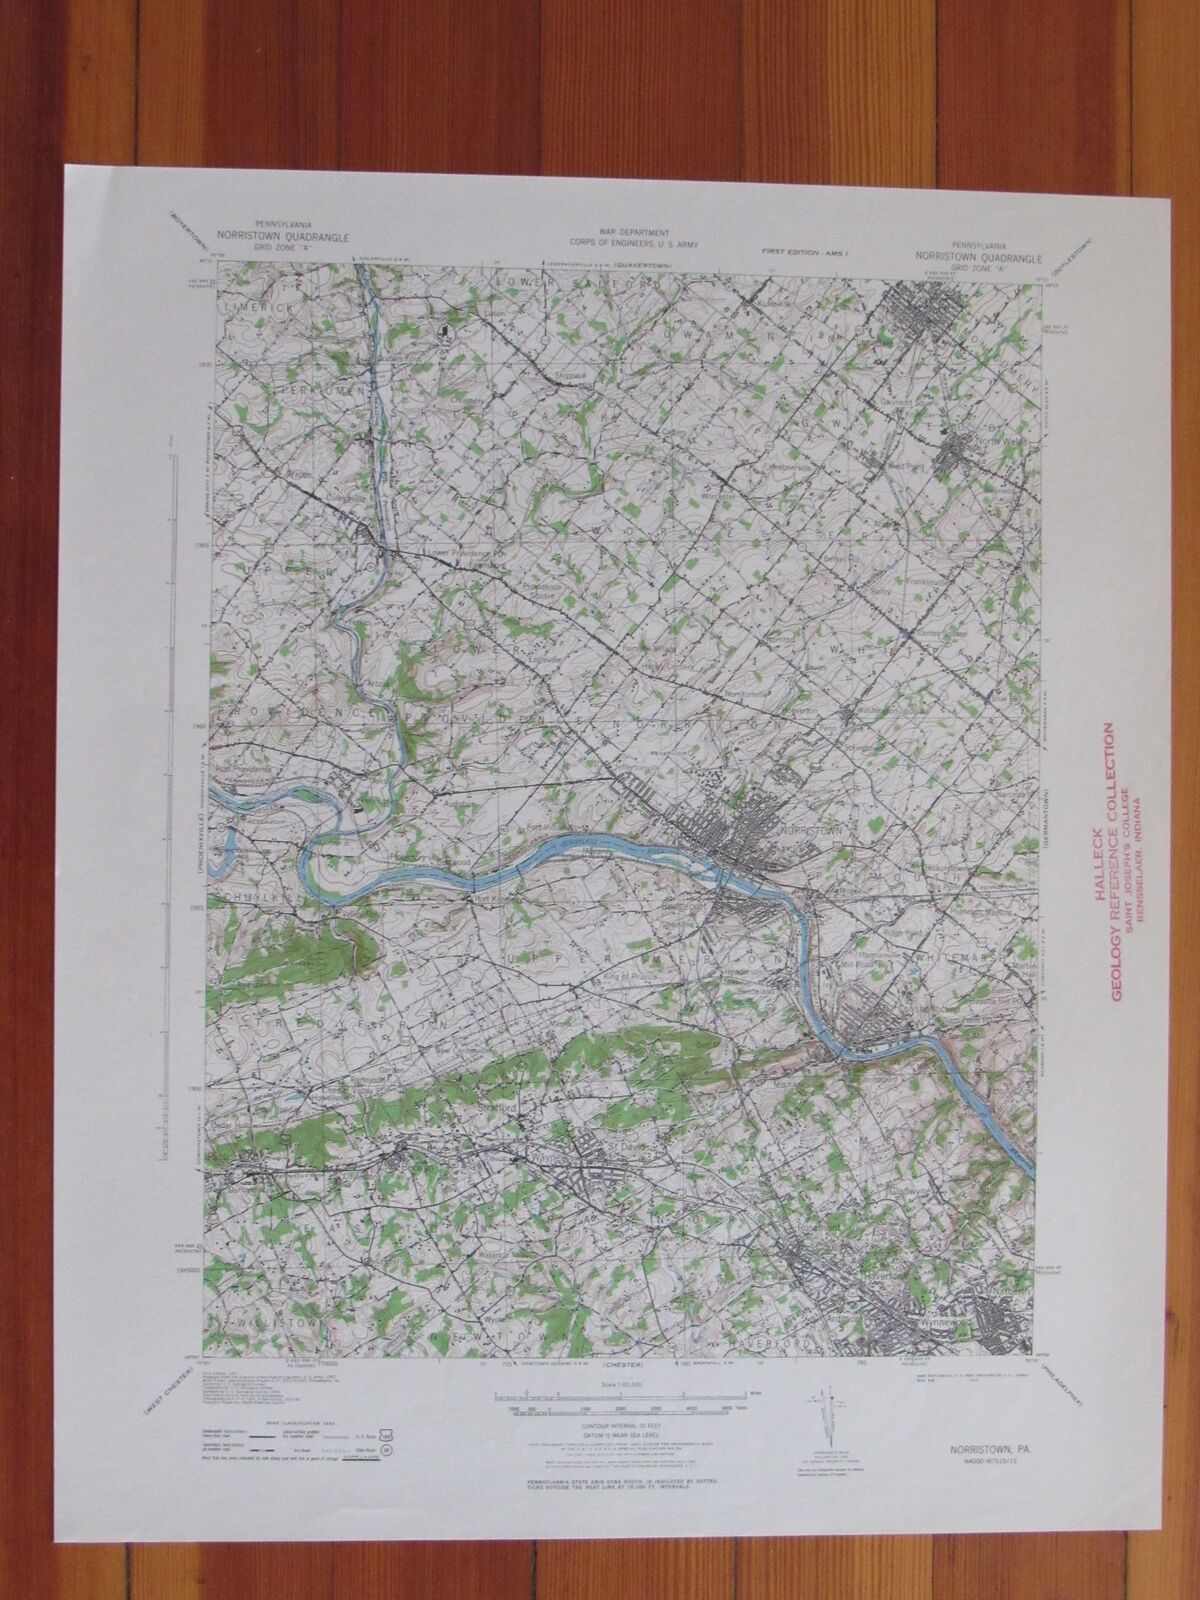 Norristown Pennsylvania 1943 Original Vintage USGS Topo Map